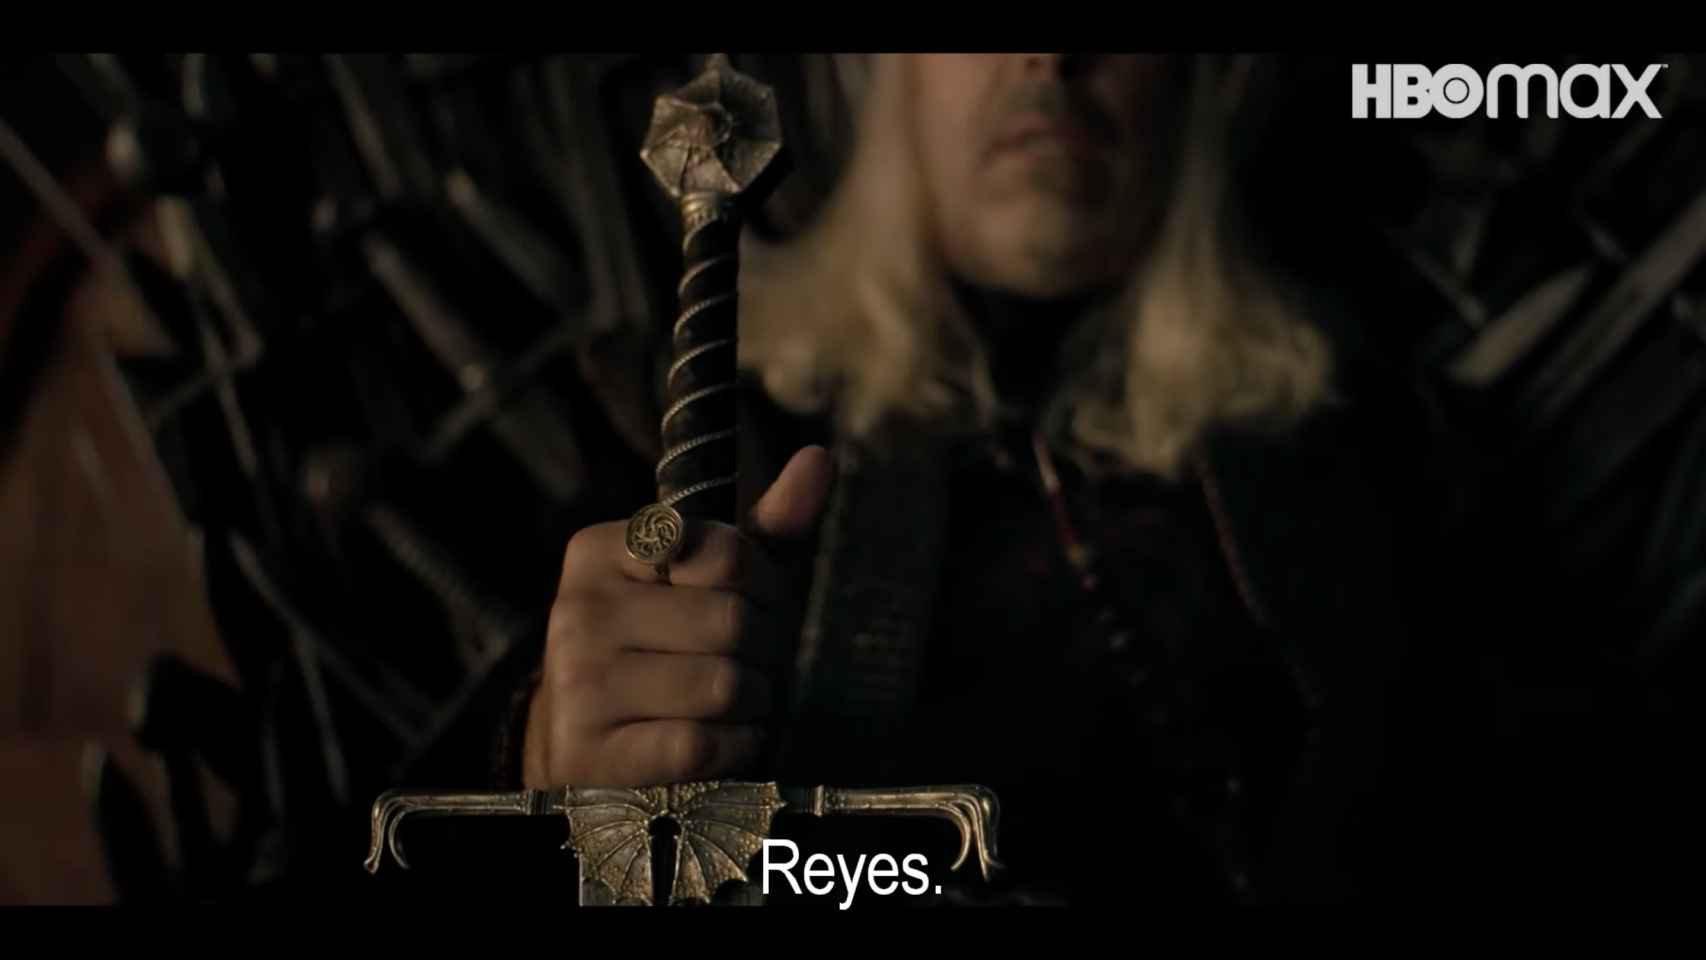 Detalle del anillo y la espada del rey Viserys Targaryen.